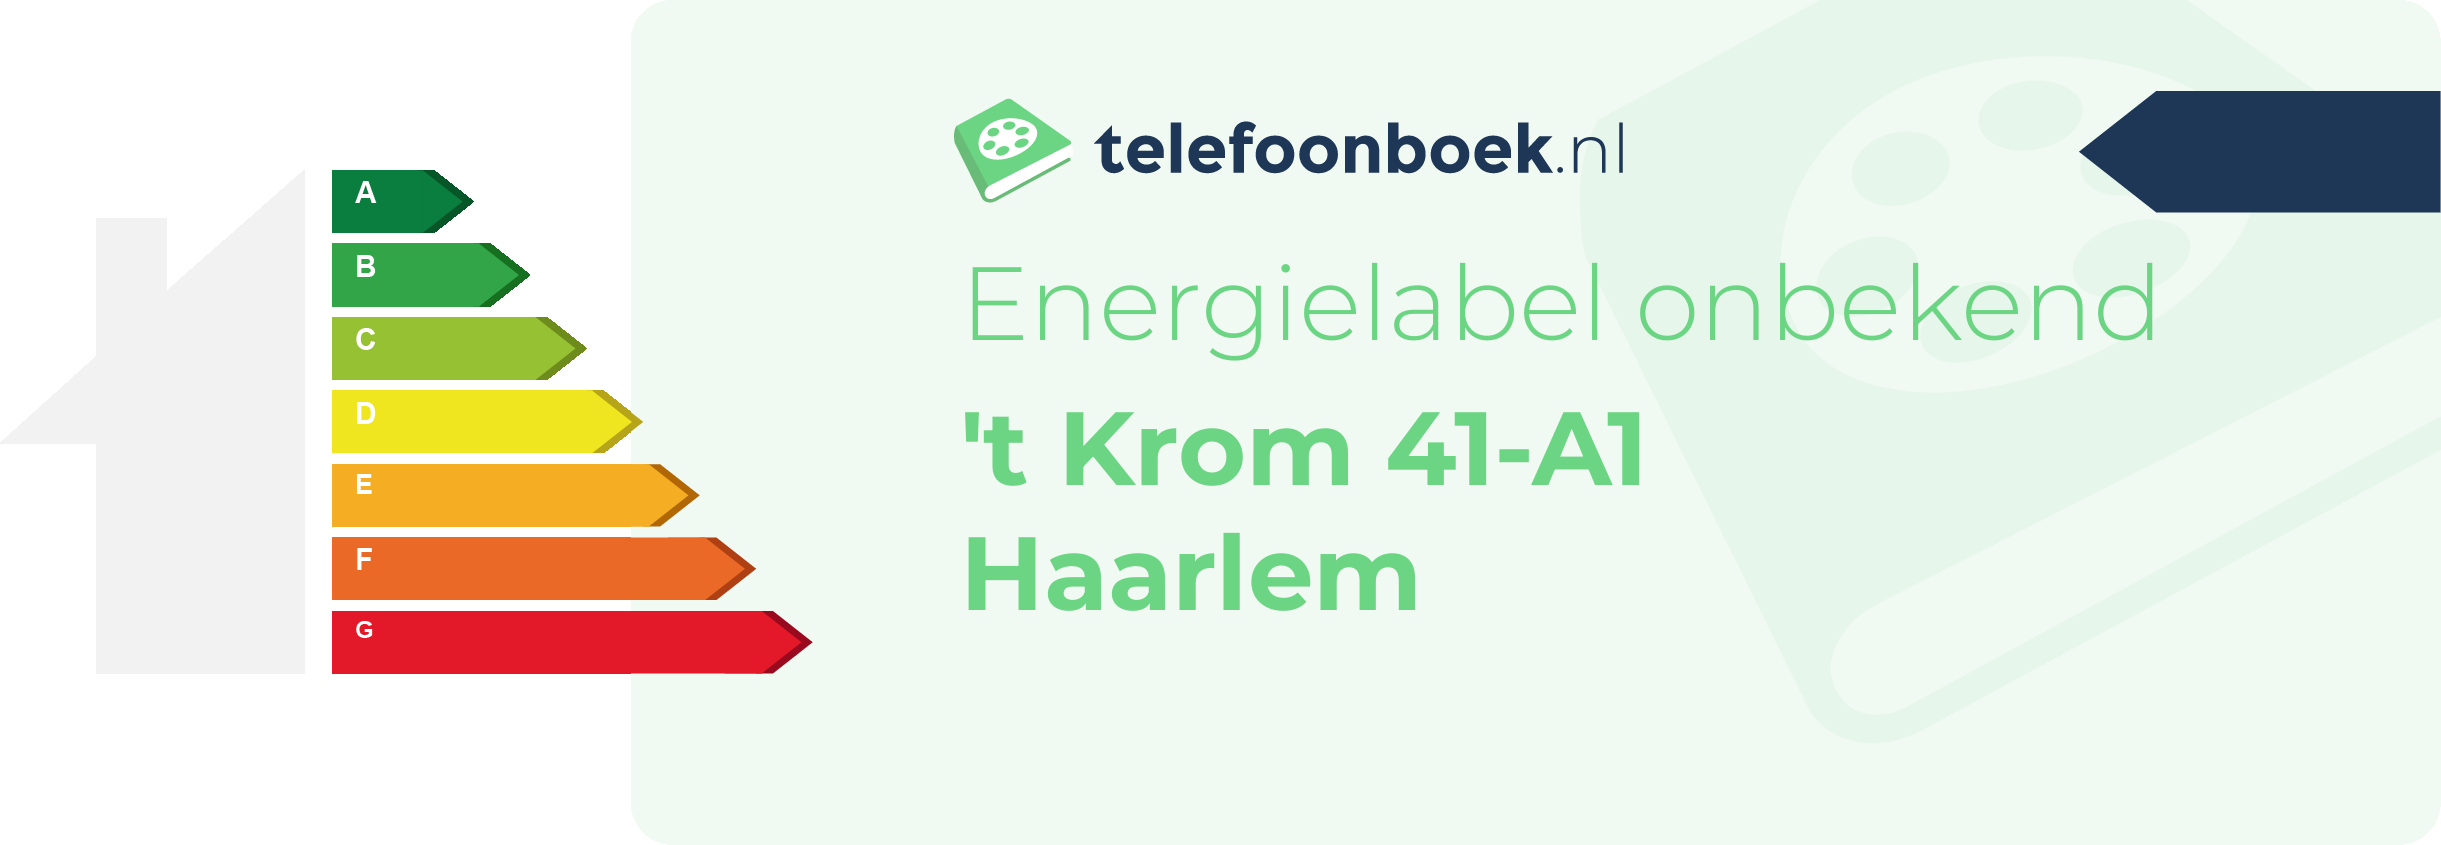 Energielabel 't Krom 41-A1 Haarlem